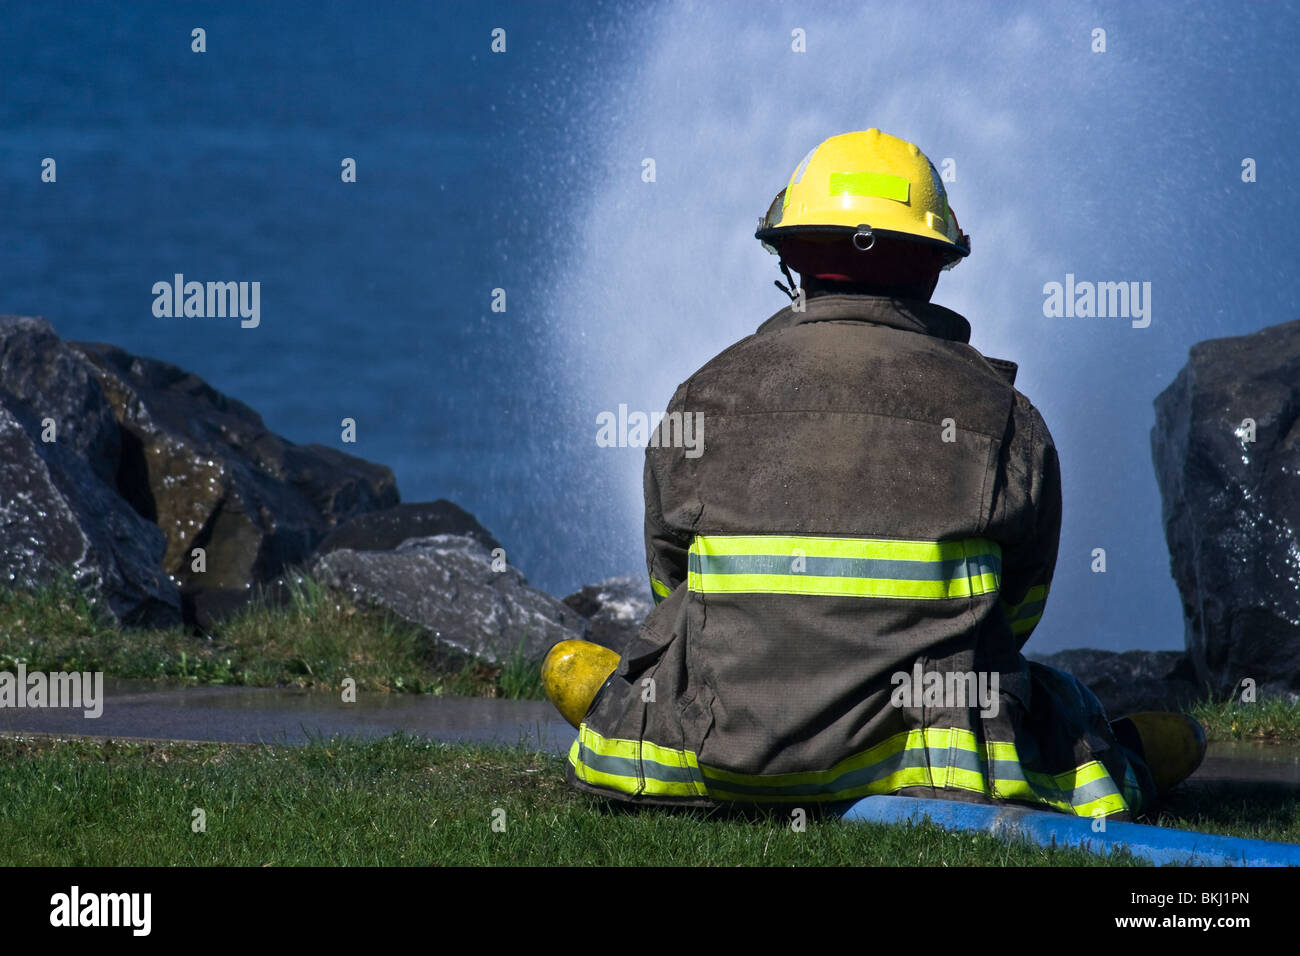 Nuevo bombero sentado en una manguera a presión Foto de stock